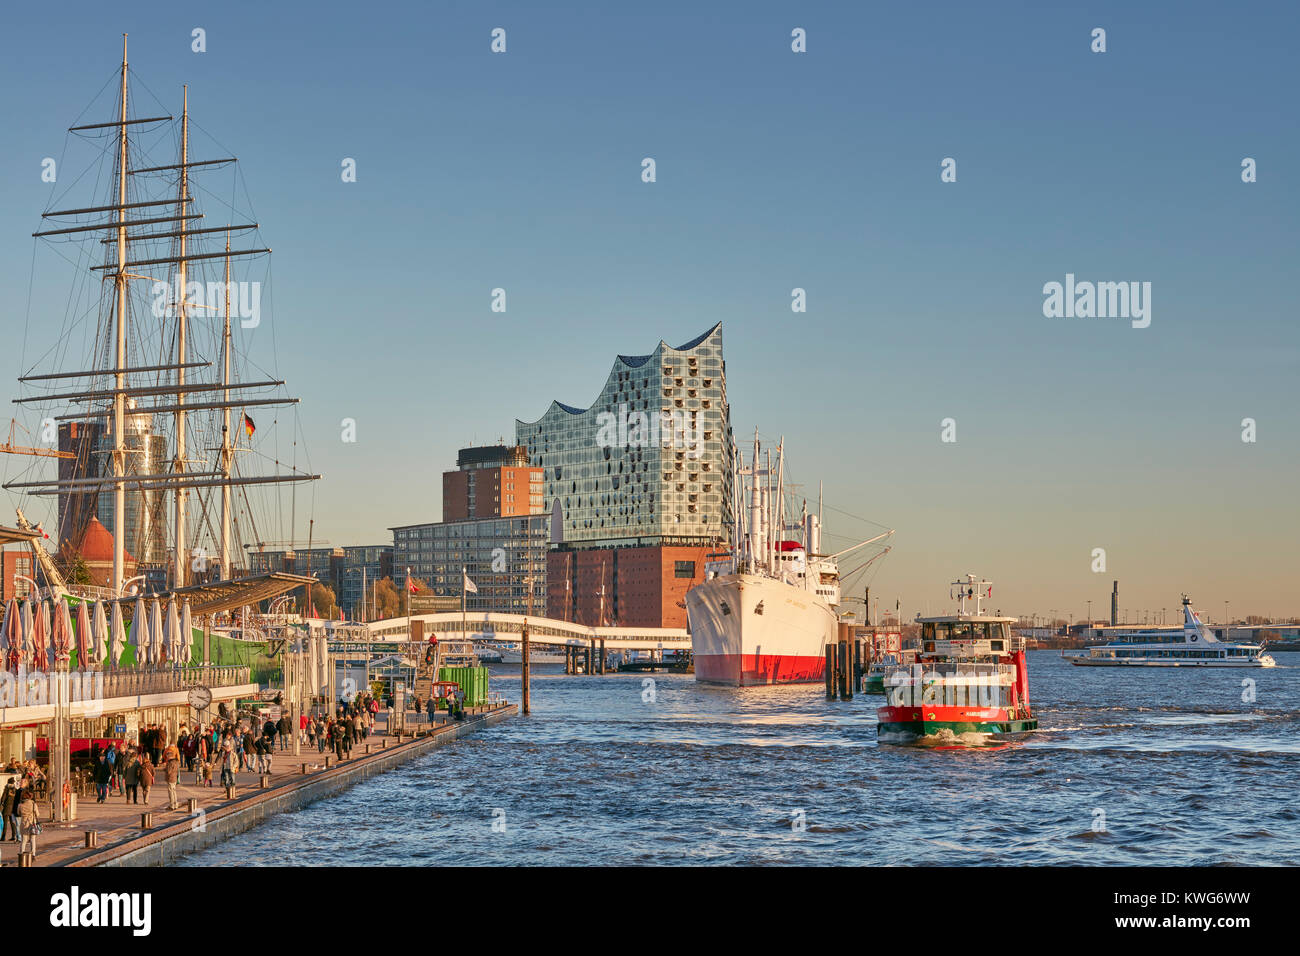 Elbphilharmonie Concert Hall, en el río Elba, HafenCity, Hamburgo, Alemania. Con barcos históricos 'Rickmer Rickmers' y 'Cap San Diego' Foto de stock